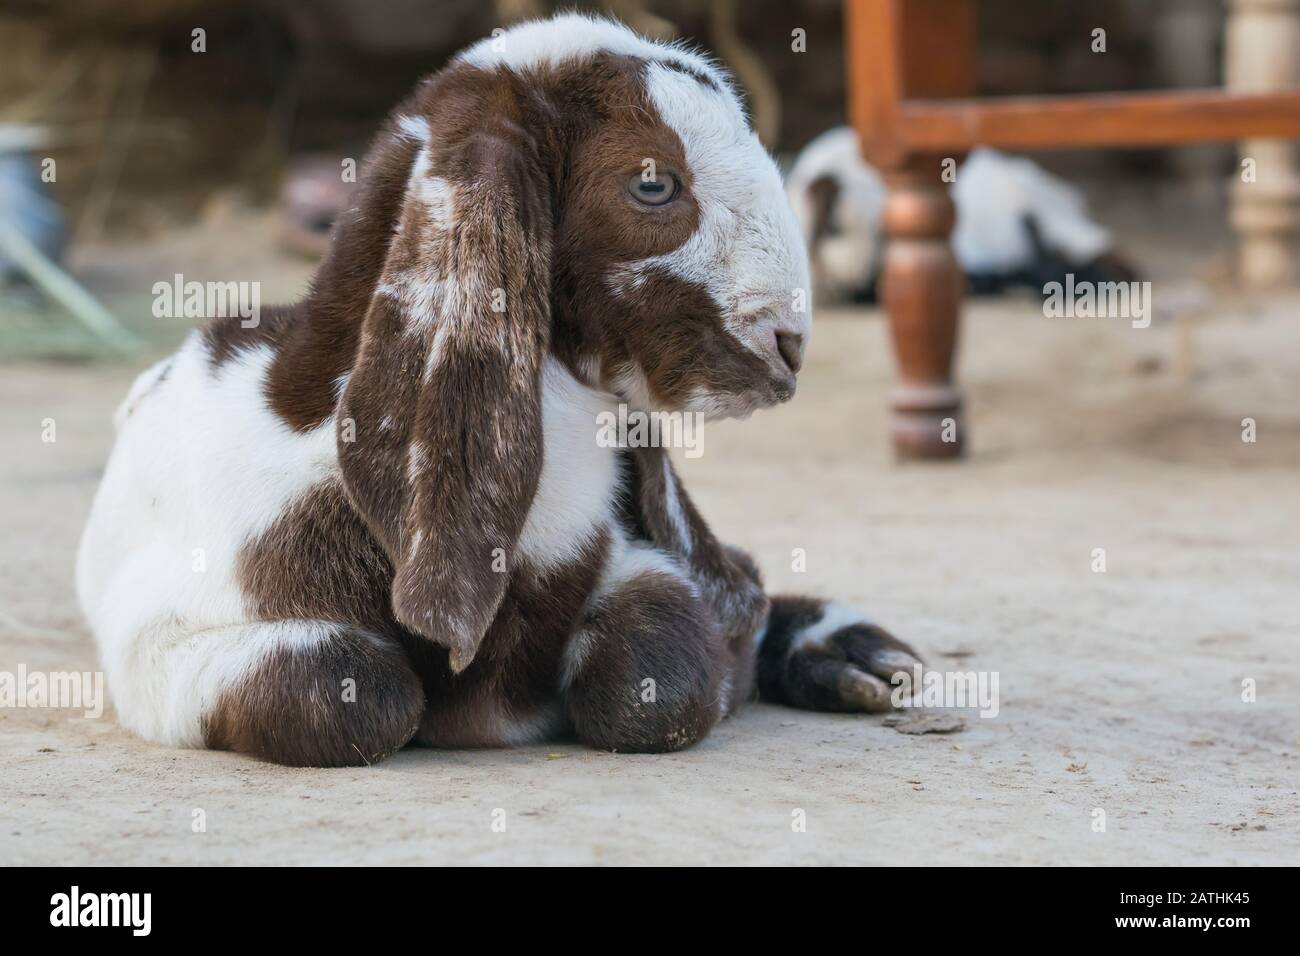 Eine braune und weiße neugeborene, auf der Erde sitzende Babyziege.ein Portrait einer neugeborenen Babyziege. Stockfoto